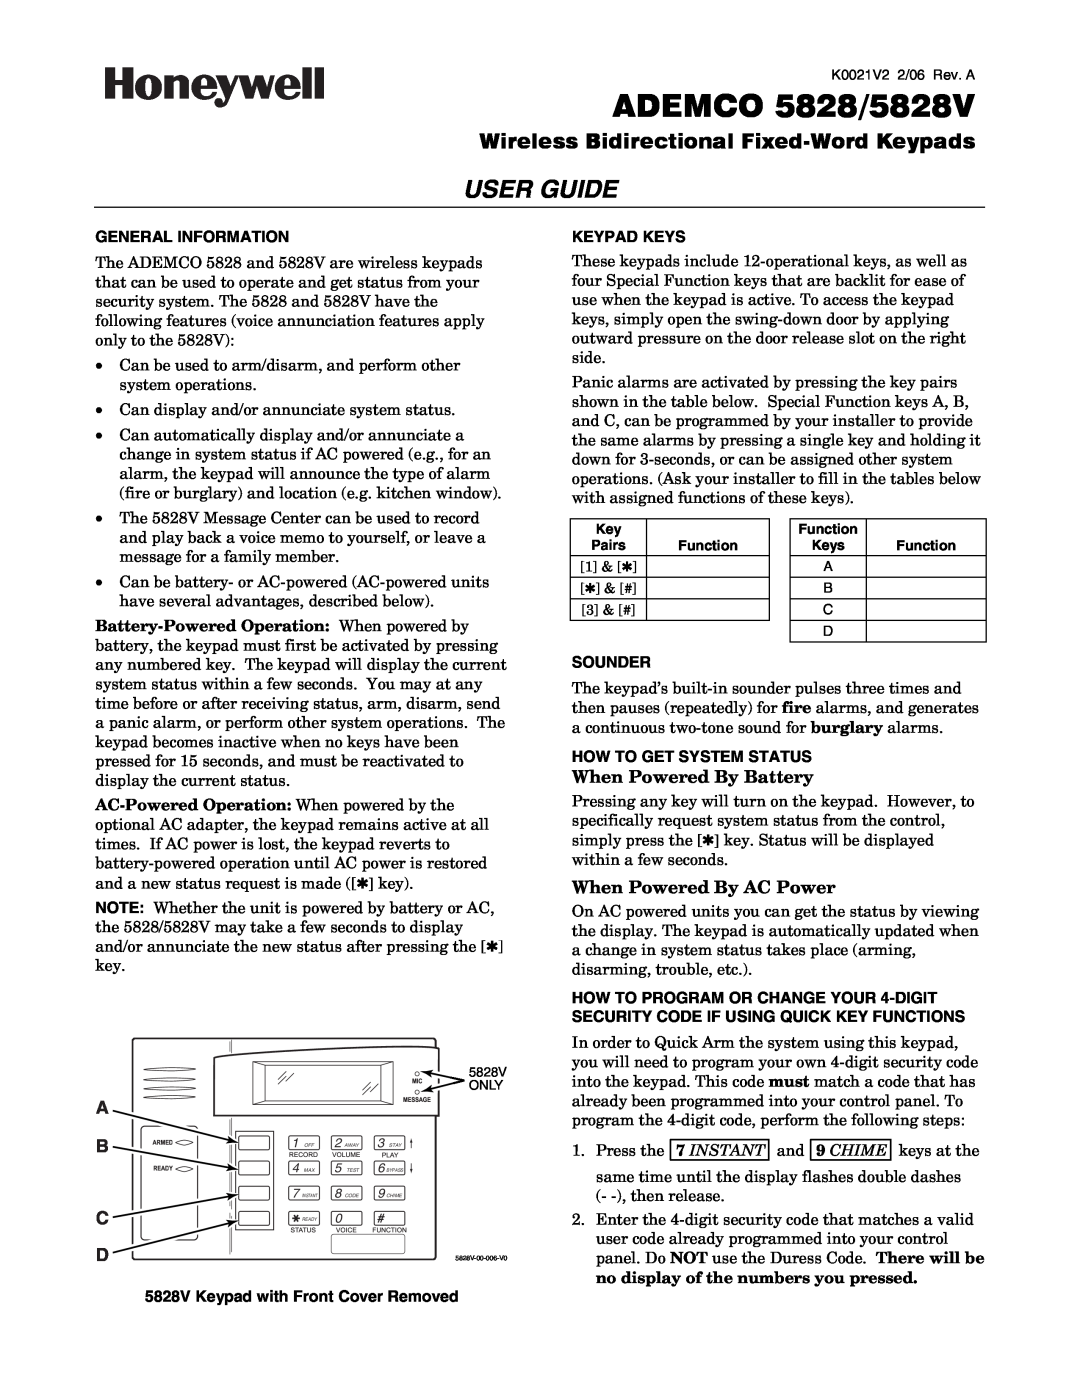 Honeywell 5828/5828V manual General Information, 5828V Keypad with Front Cover Removed, Keypad Keys, Sounder, User Guide 